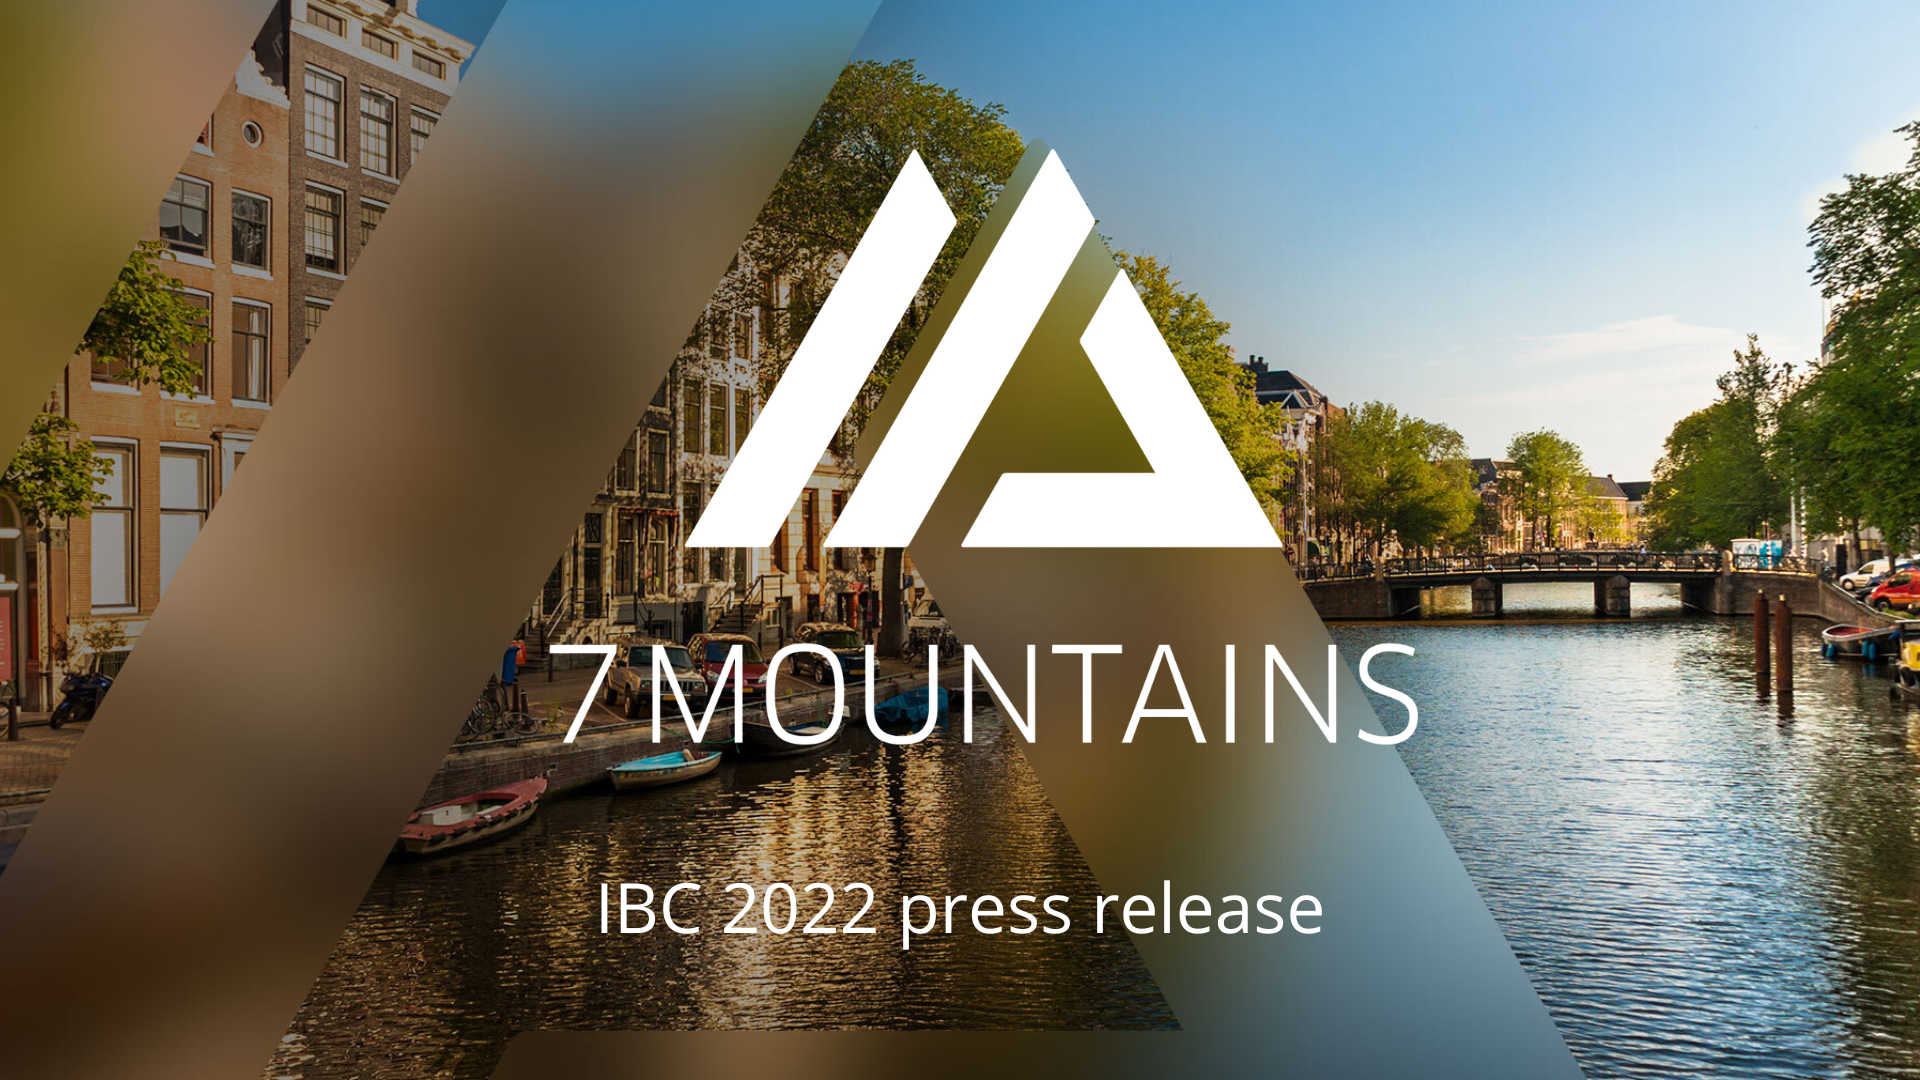 IBC 2022 press release (1)